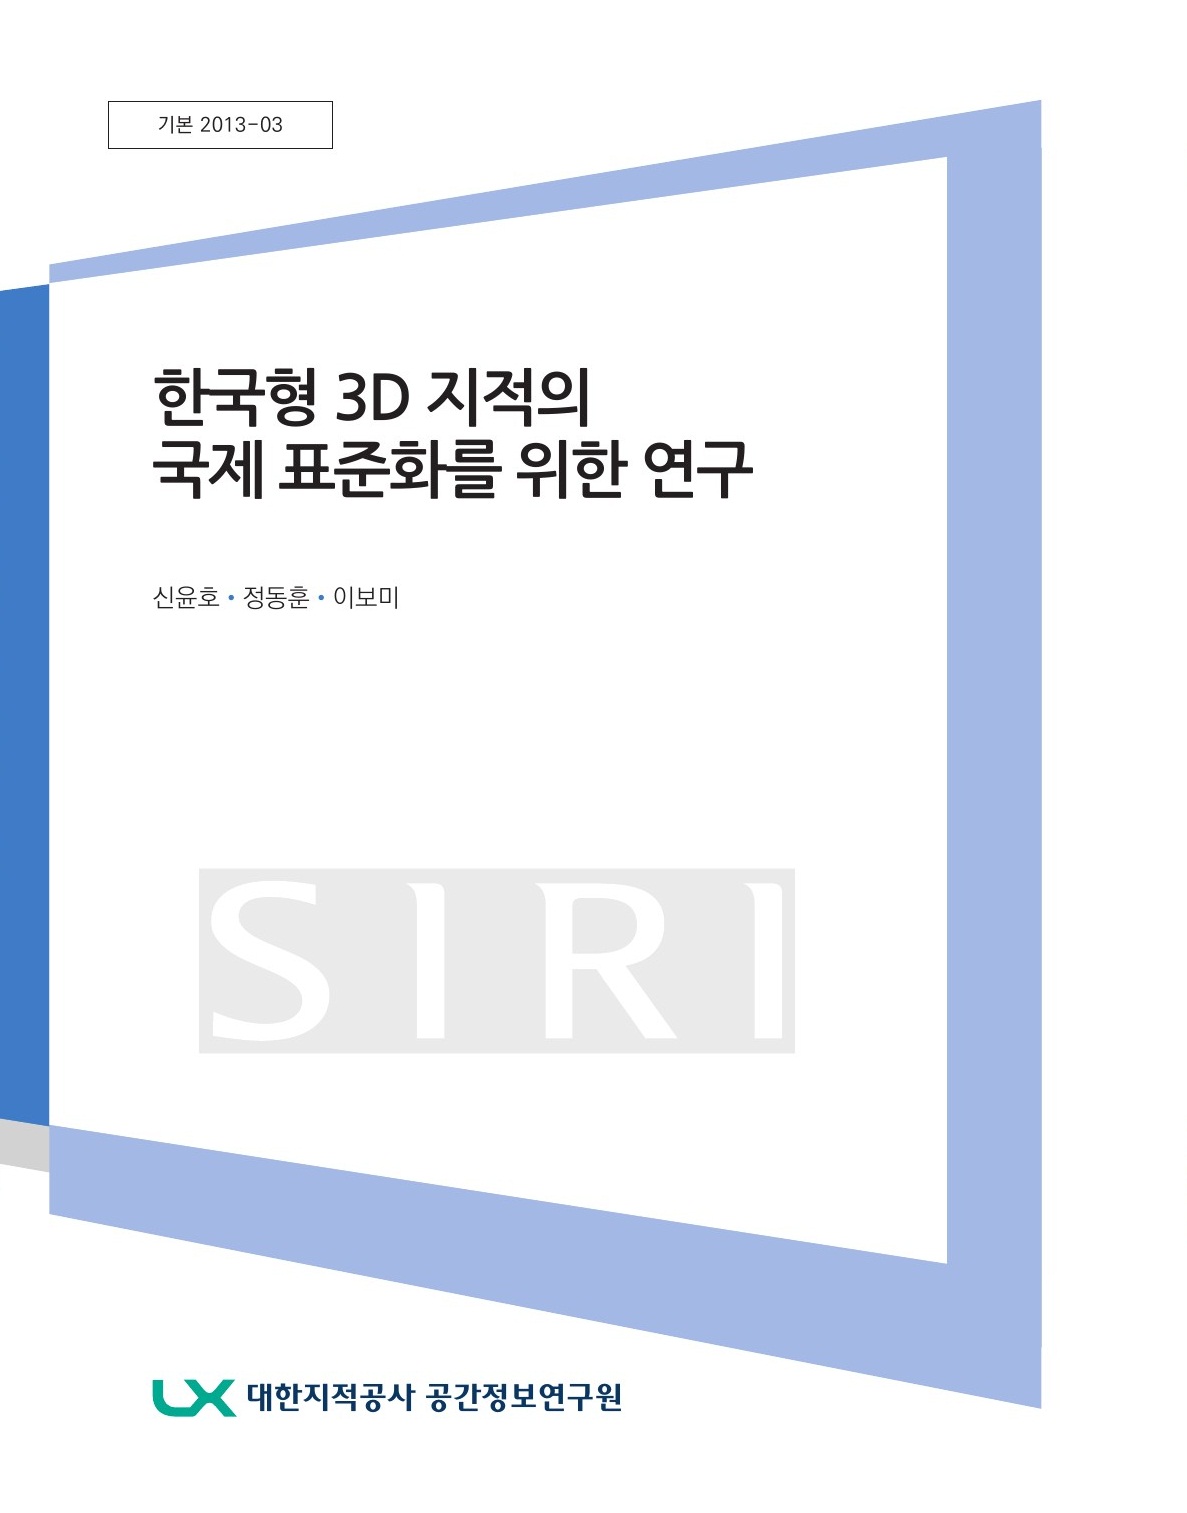 한국형 3D 지적의 국제 표준화를 위한 연구